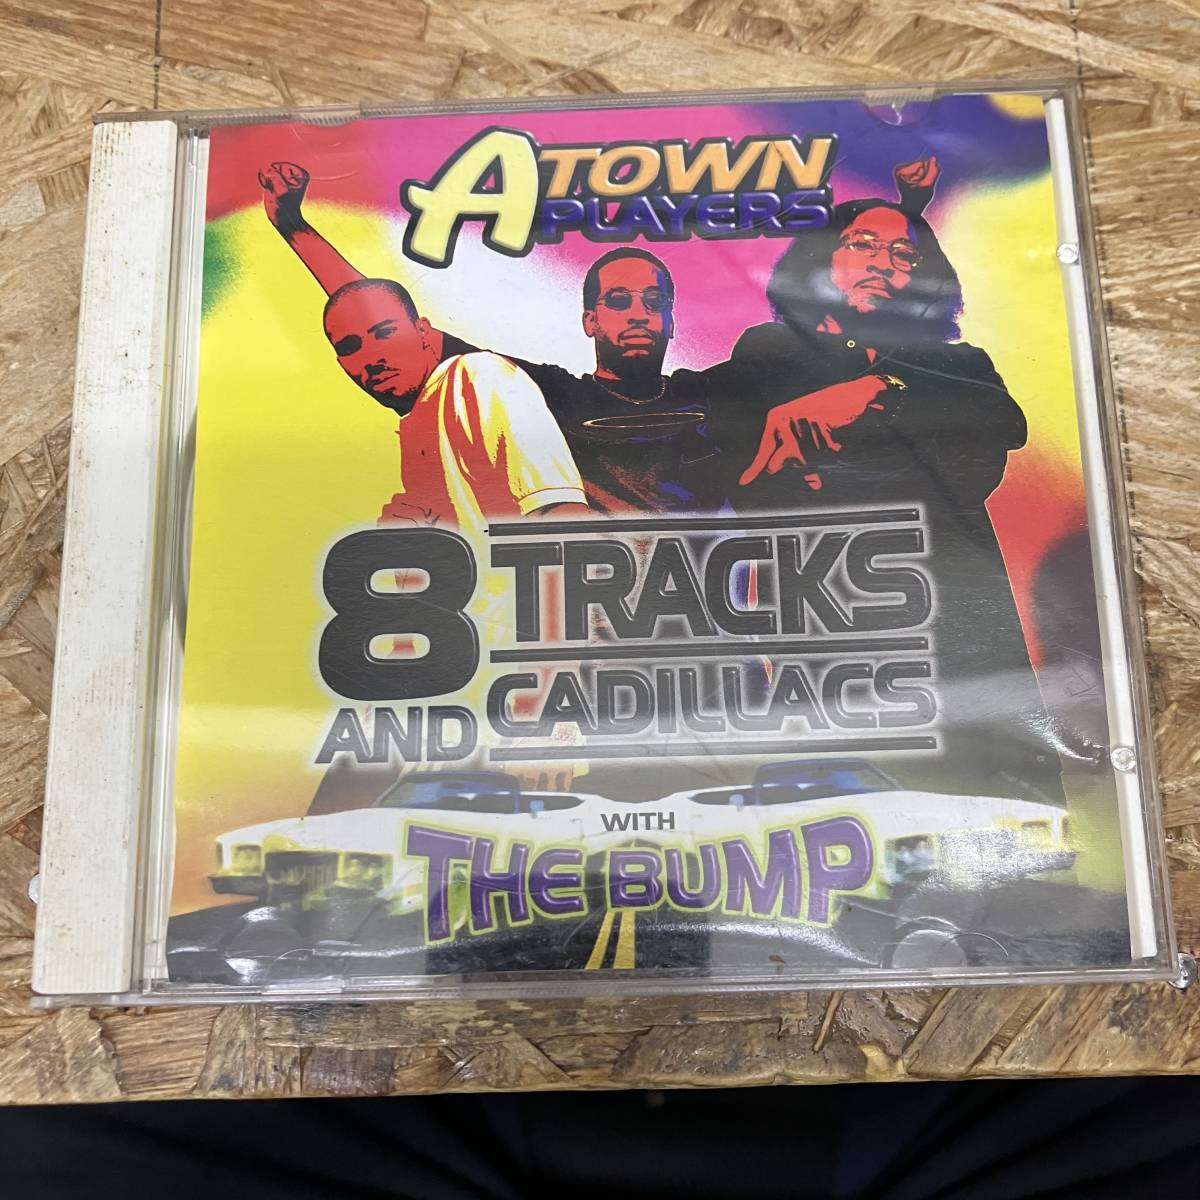 シ● HIPHOP,R&B A-TOWN PLAYERS - 8-TRACKS AND CADILLACS THE BUMP シングル,名曲! CD 中古品_画像1